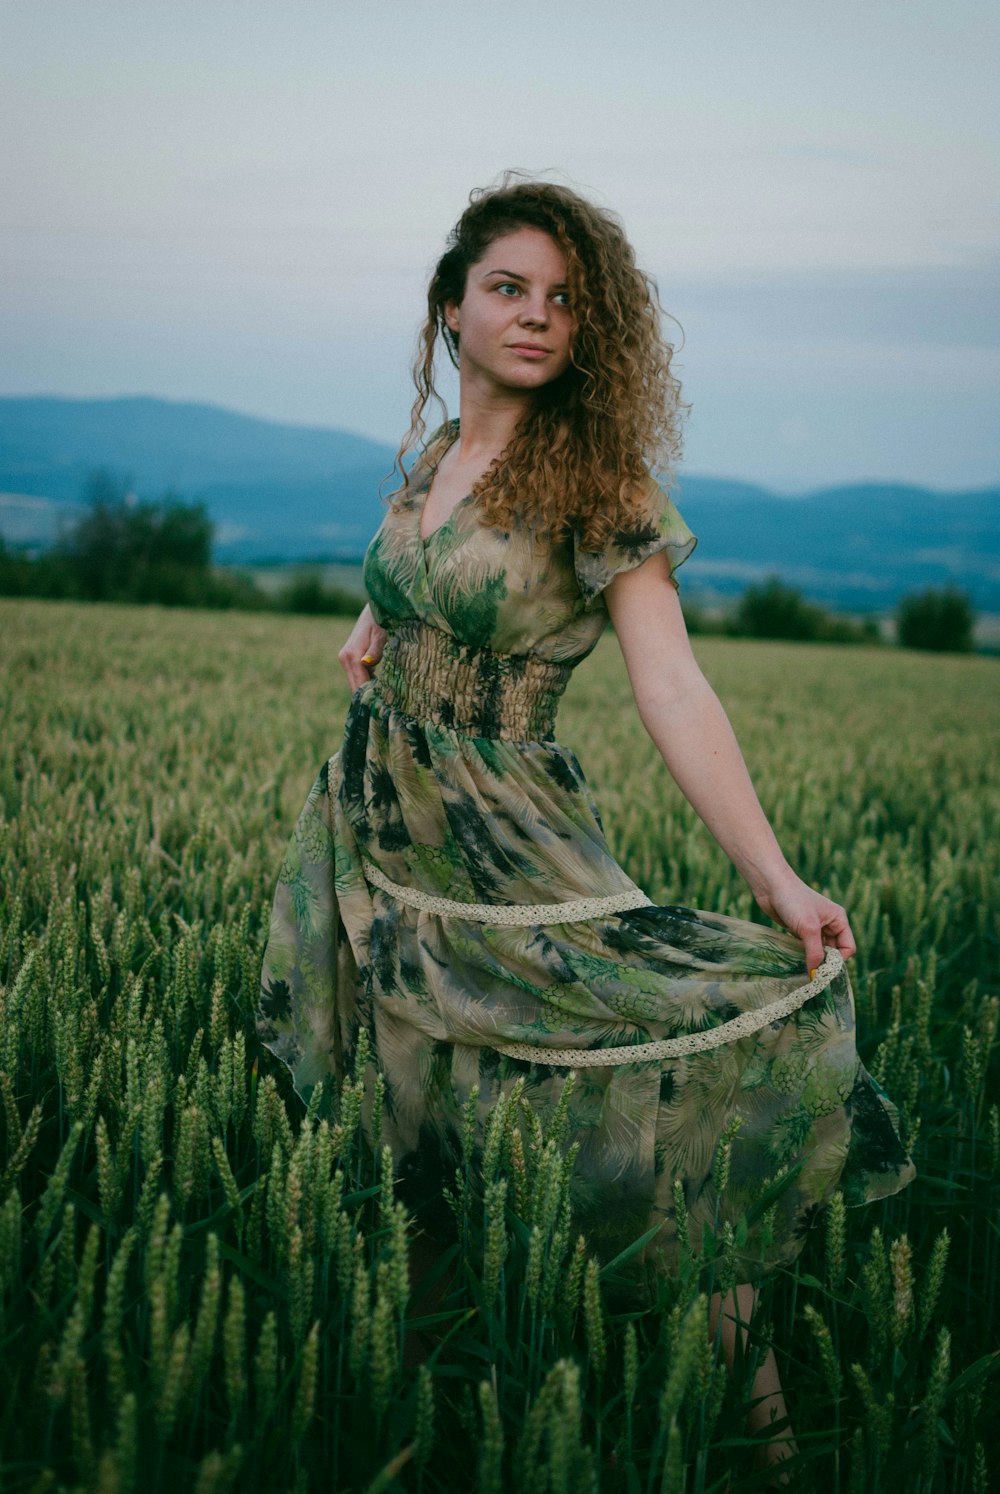 Femme en robe fleurie verte et marron debout sur le champ d’herbe verte pendant la journée